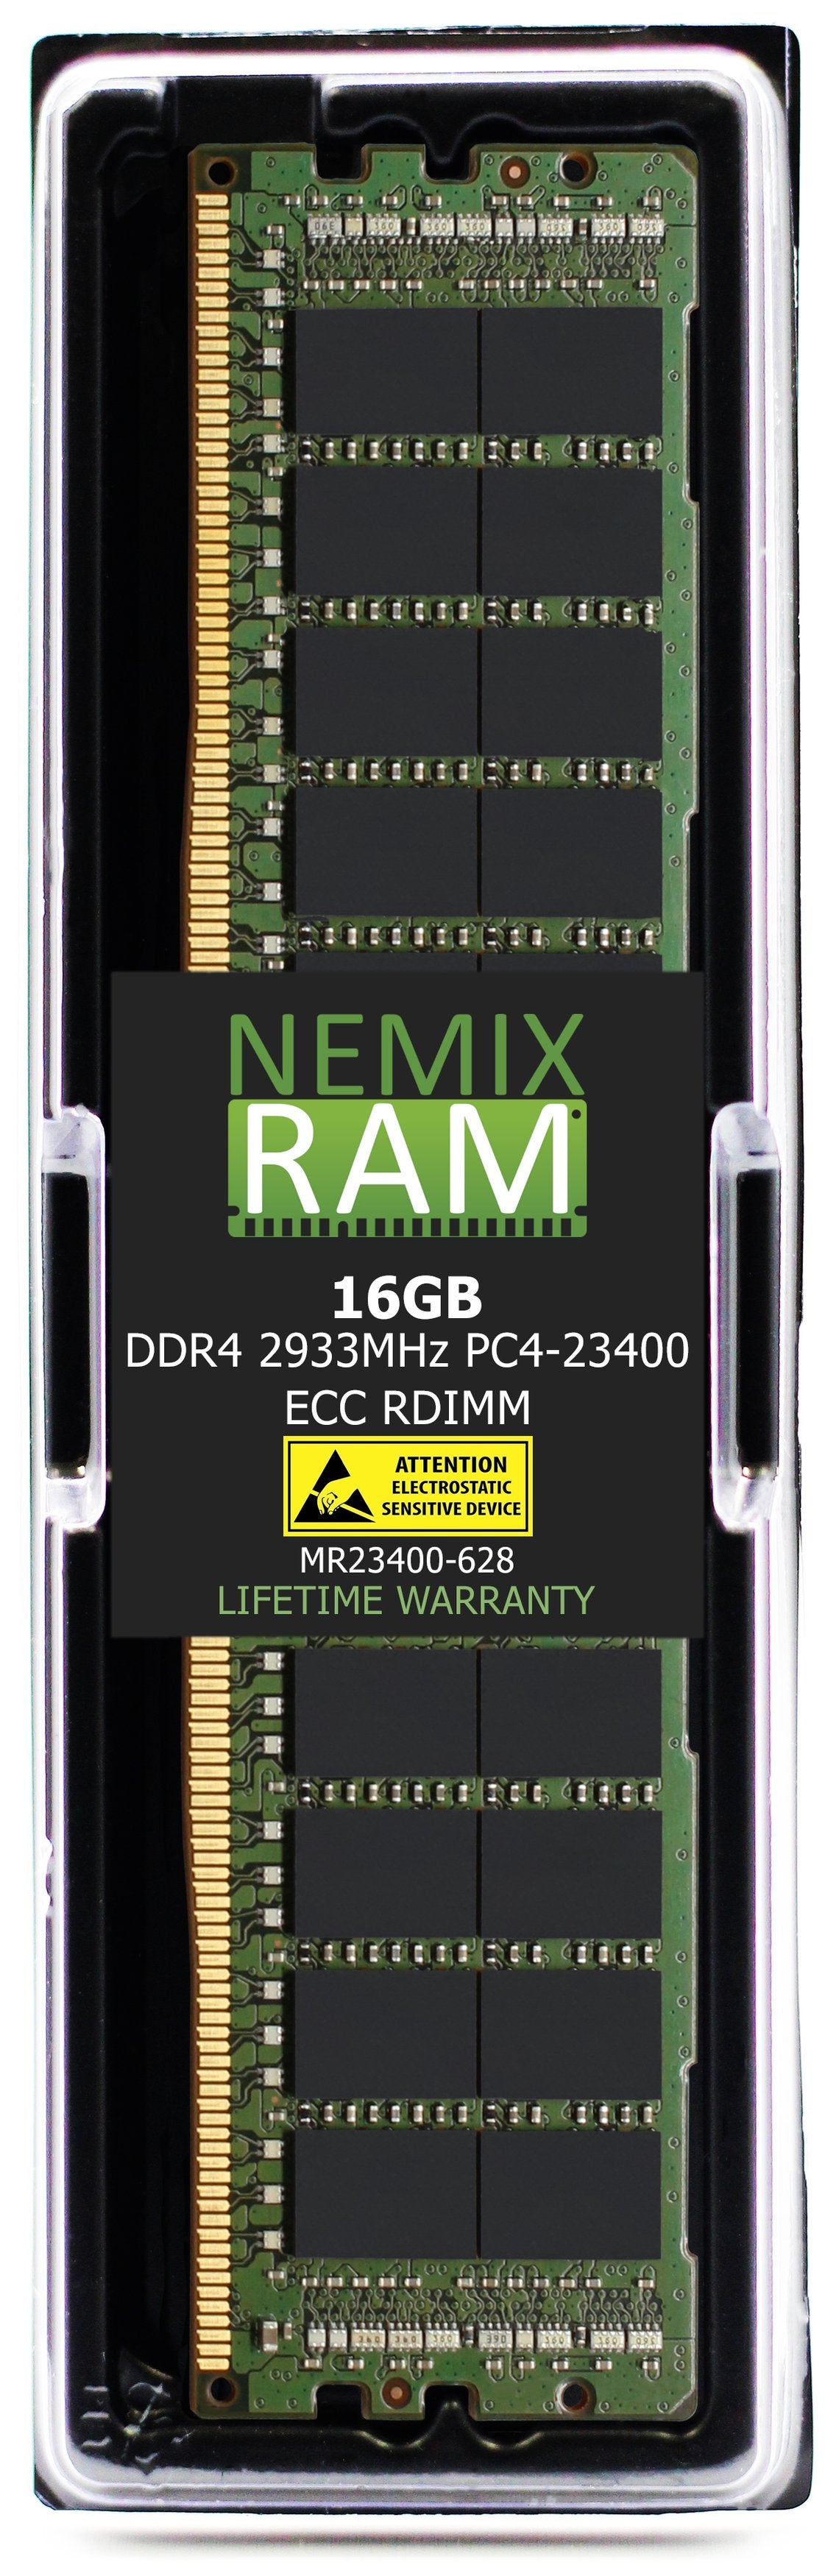 16GB DDR4 2933MHZ PC4-23400 RDIMM Compatible with Supermicro MEM-DR416L-CL01-ER29